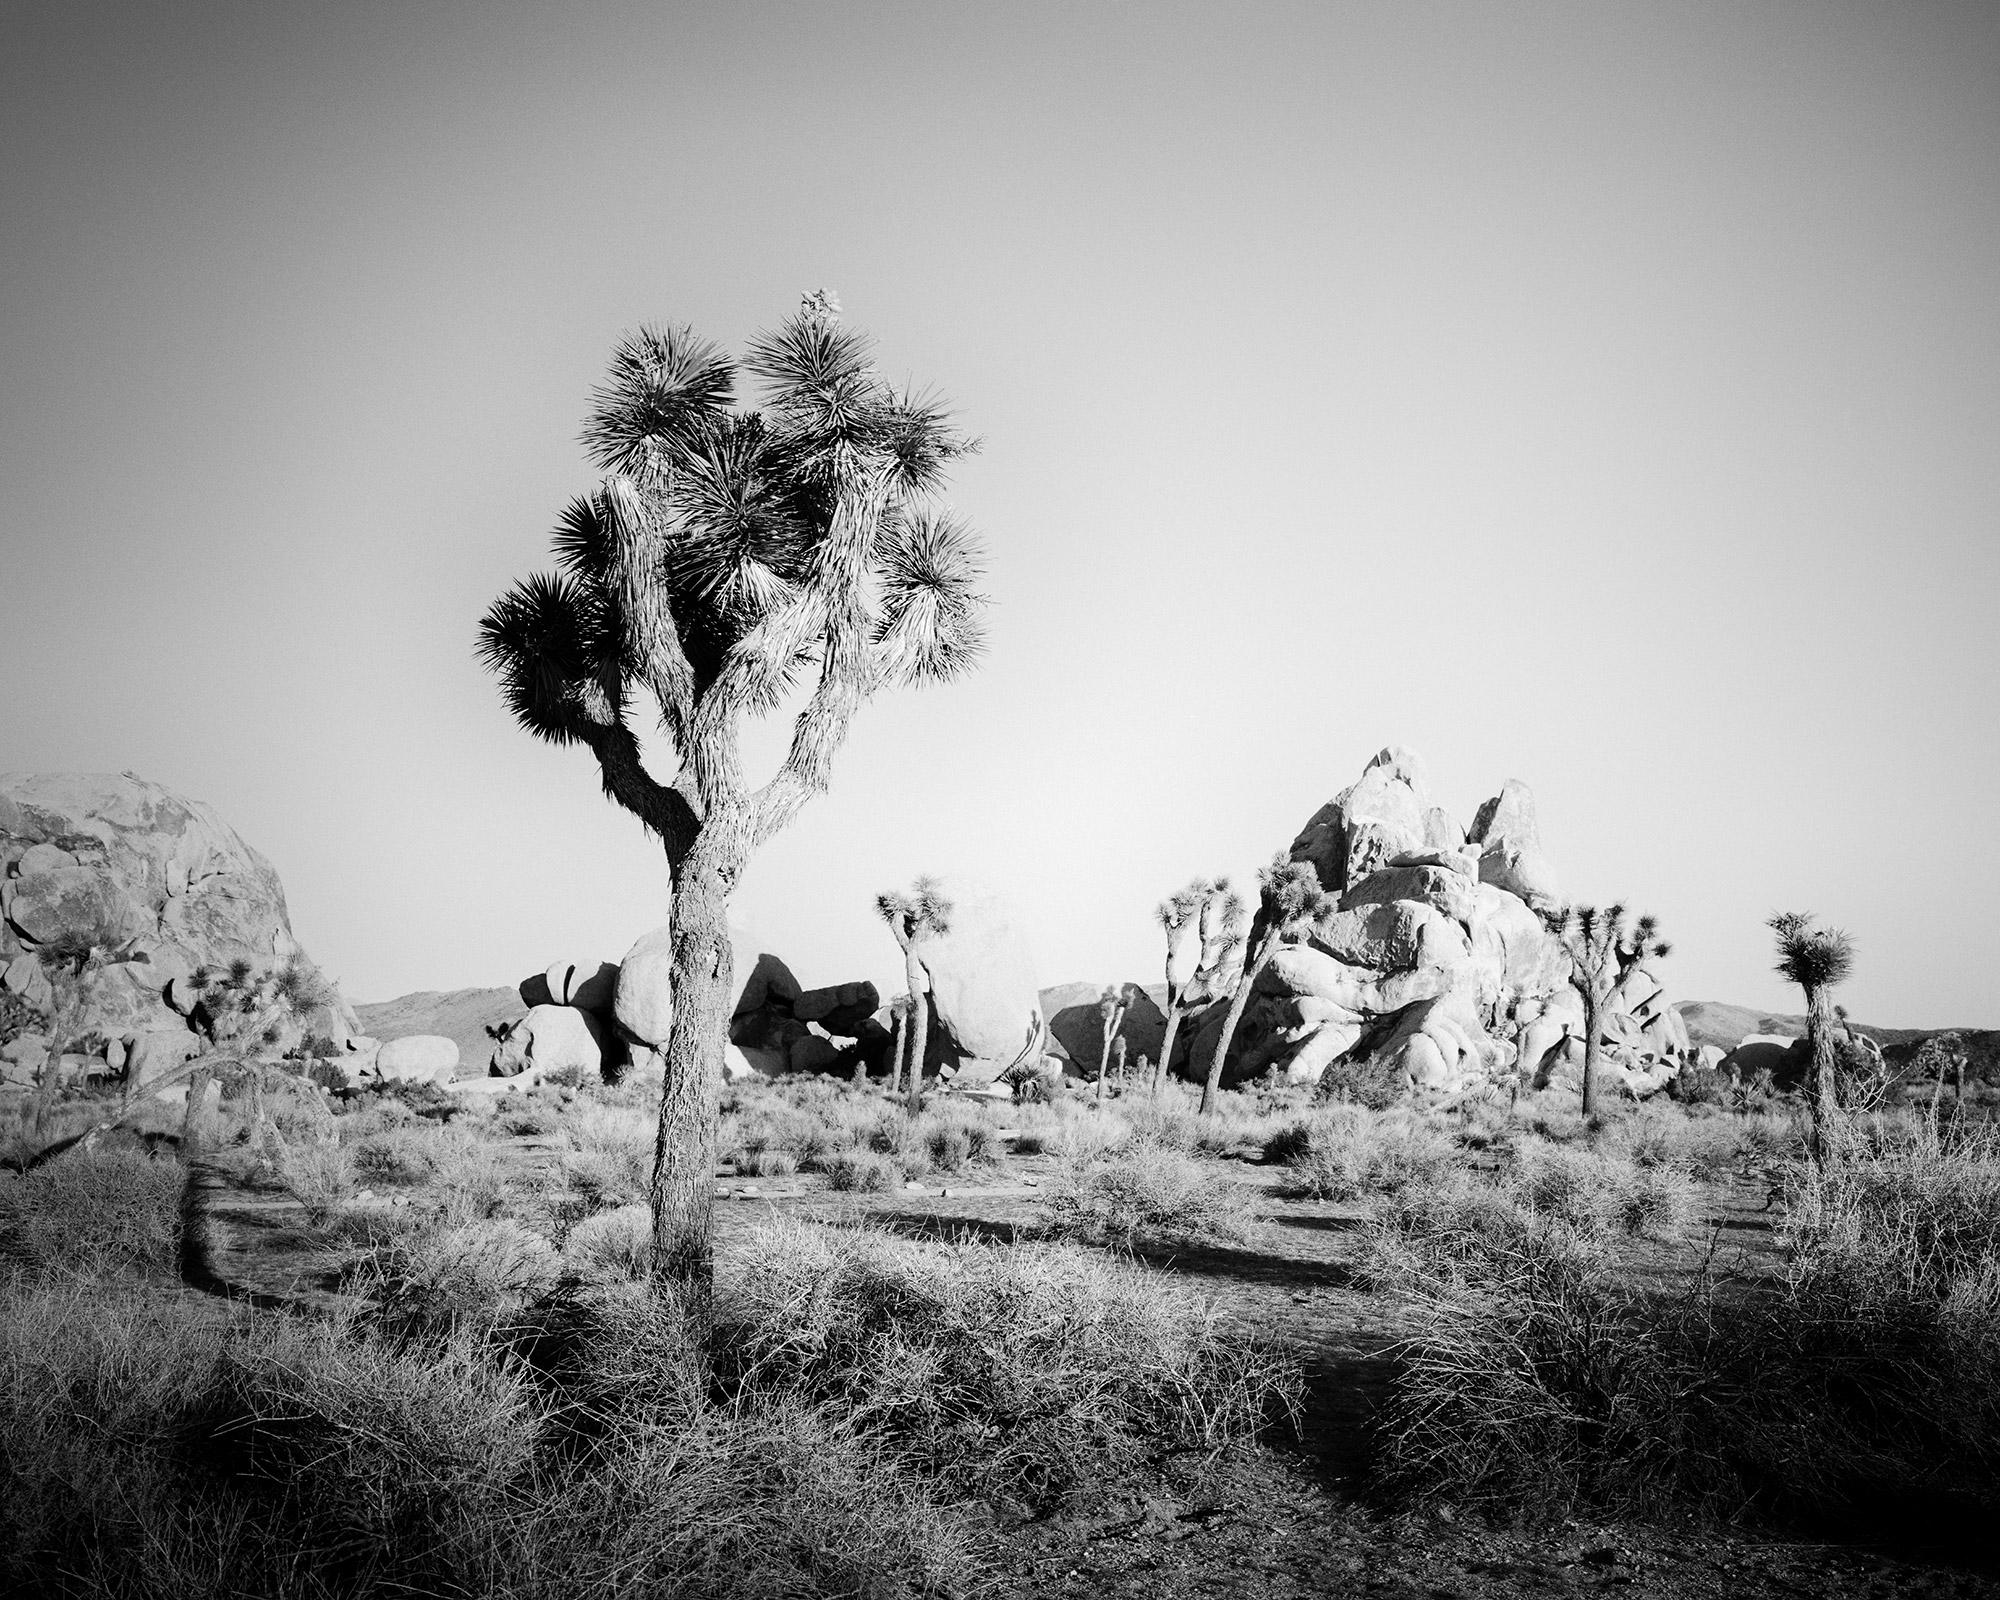 Landscape Photograph Gerald Berghammer - Joshua Tree, rochers, désert, Californie, photographie de paysage en noir et blanc